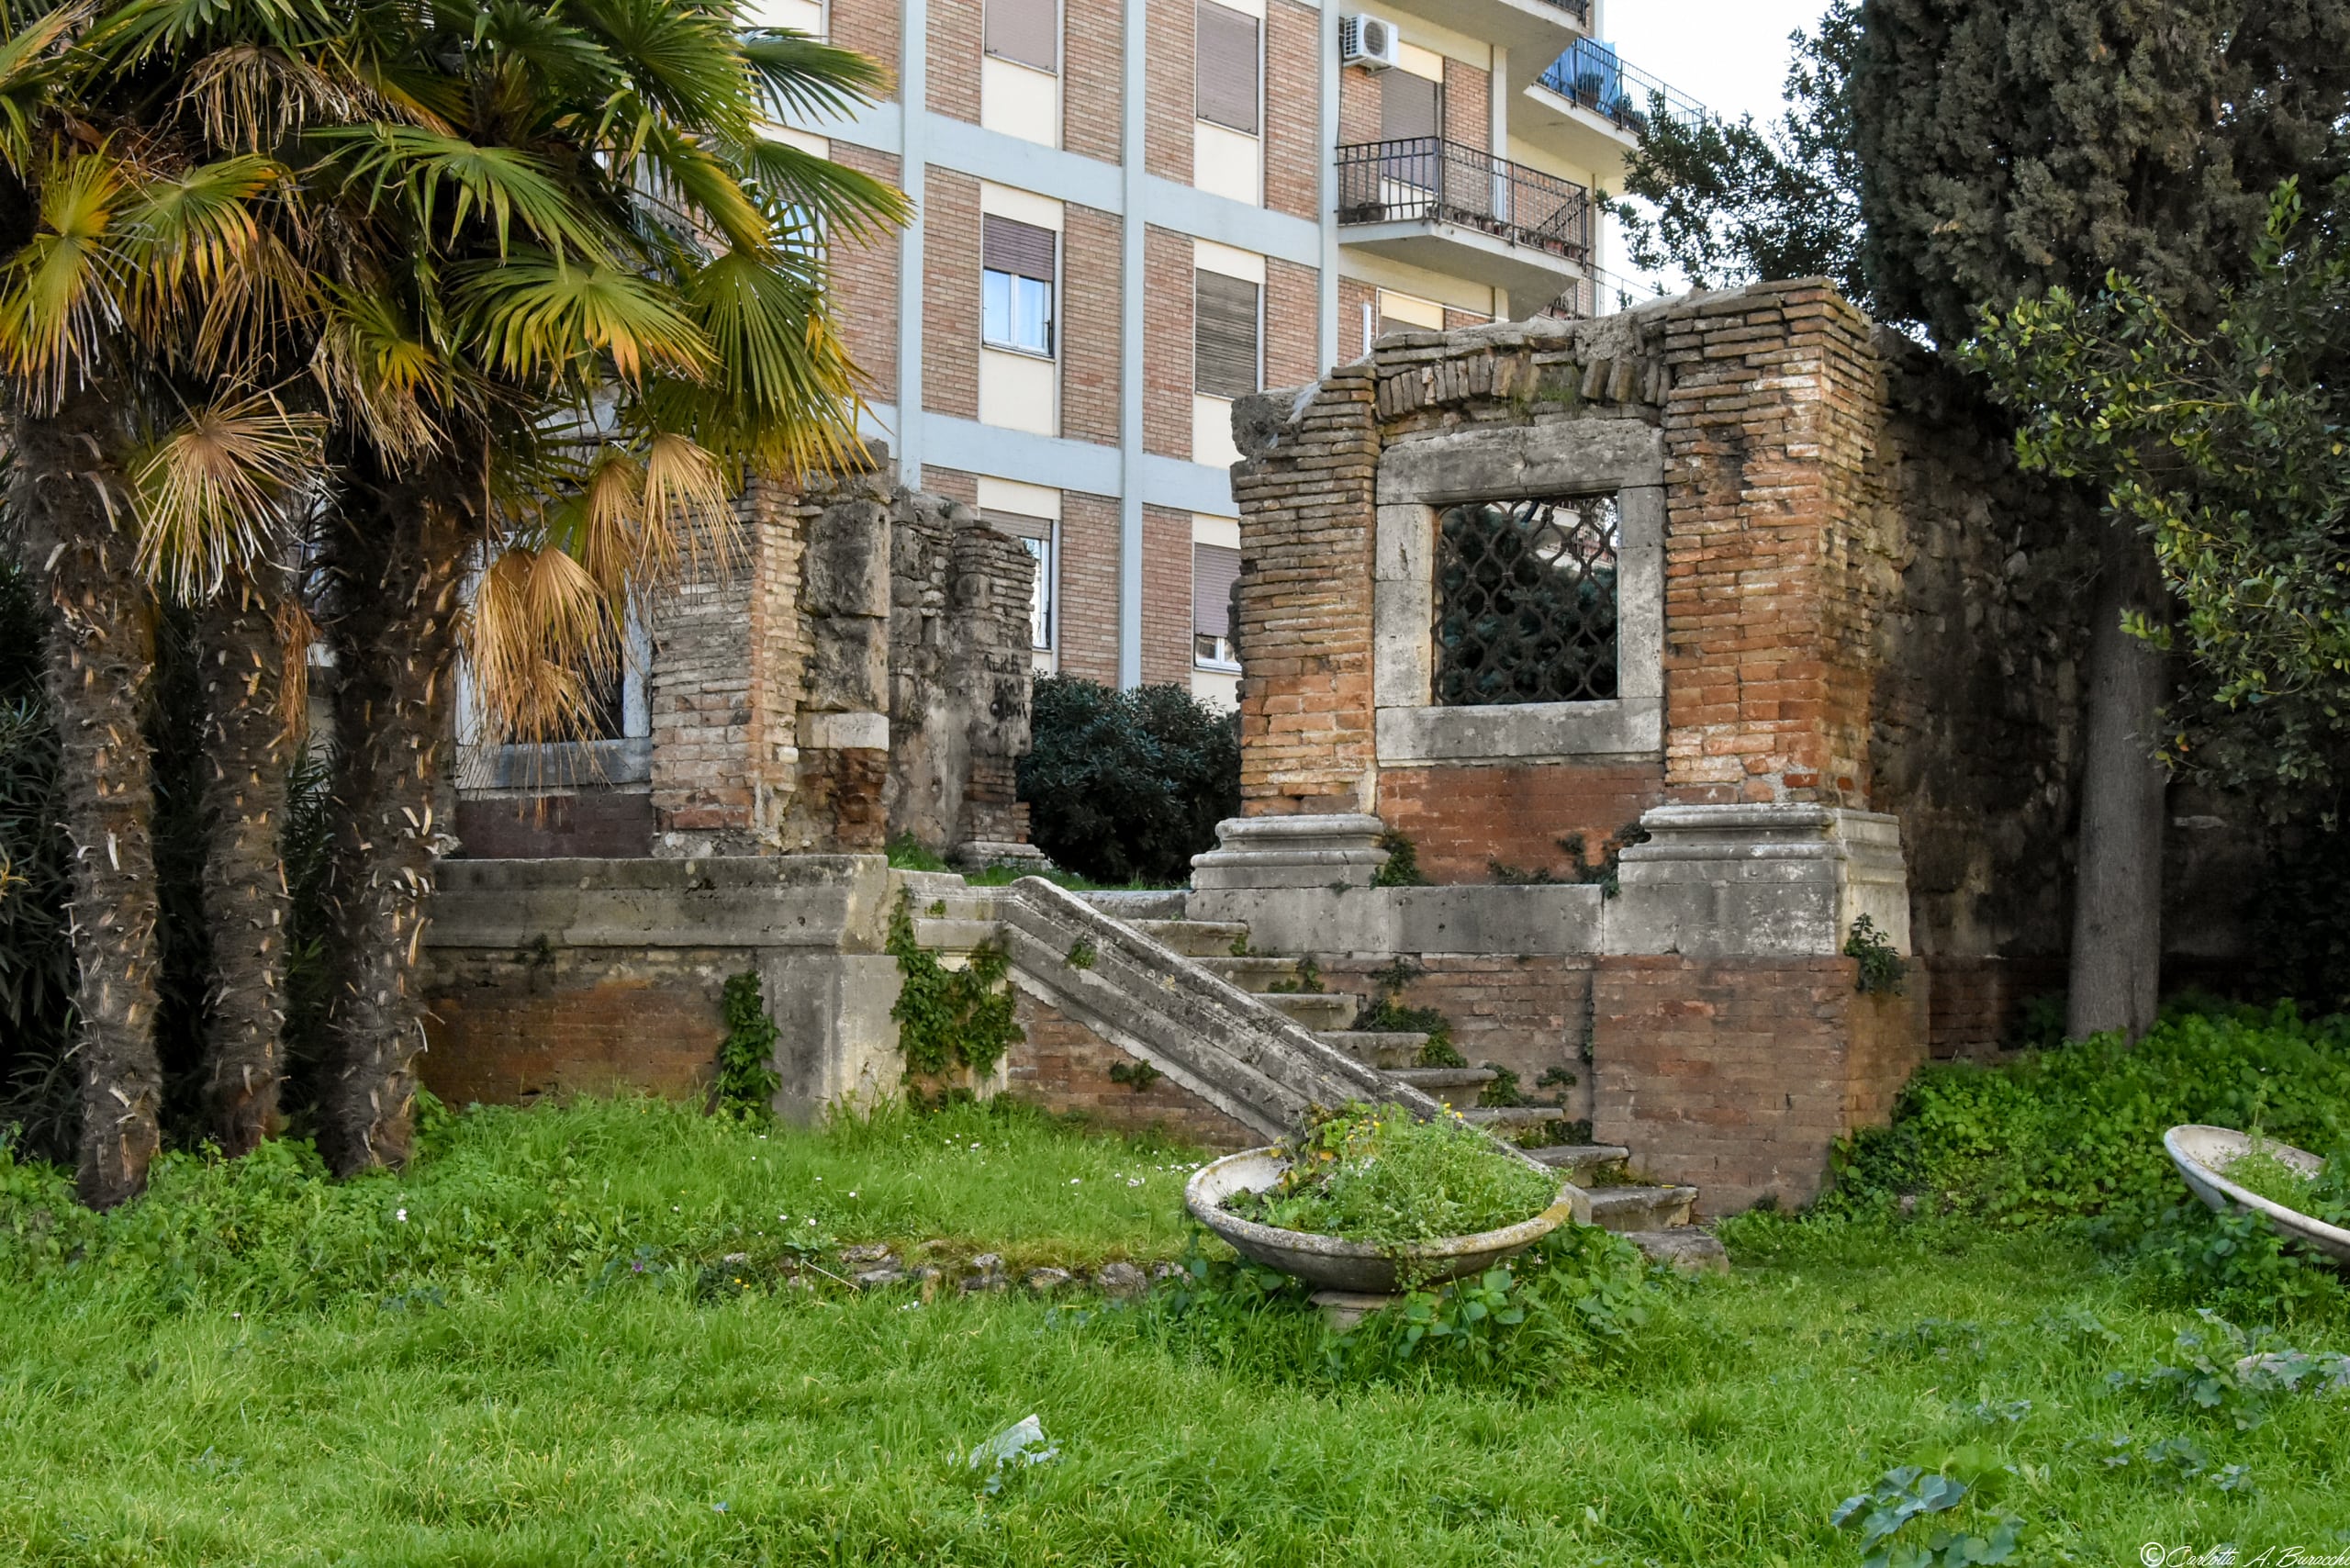 Le rovine della Chiesa di Sant'Andrea, distrutta dai bombardamenti che colpirono Terni durante la II Guerra mondiale